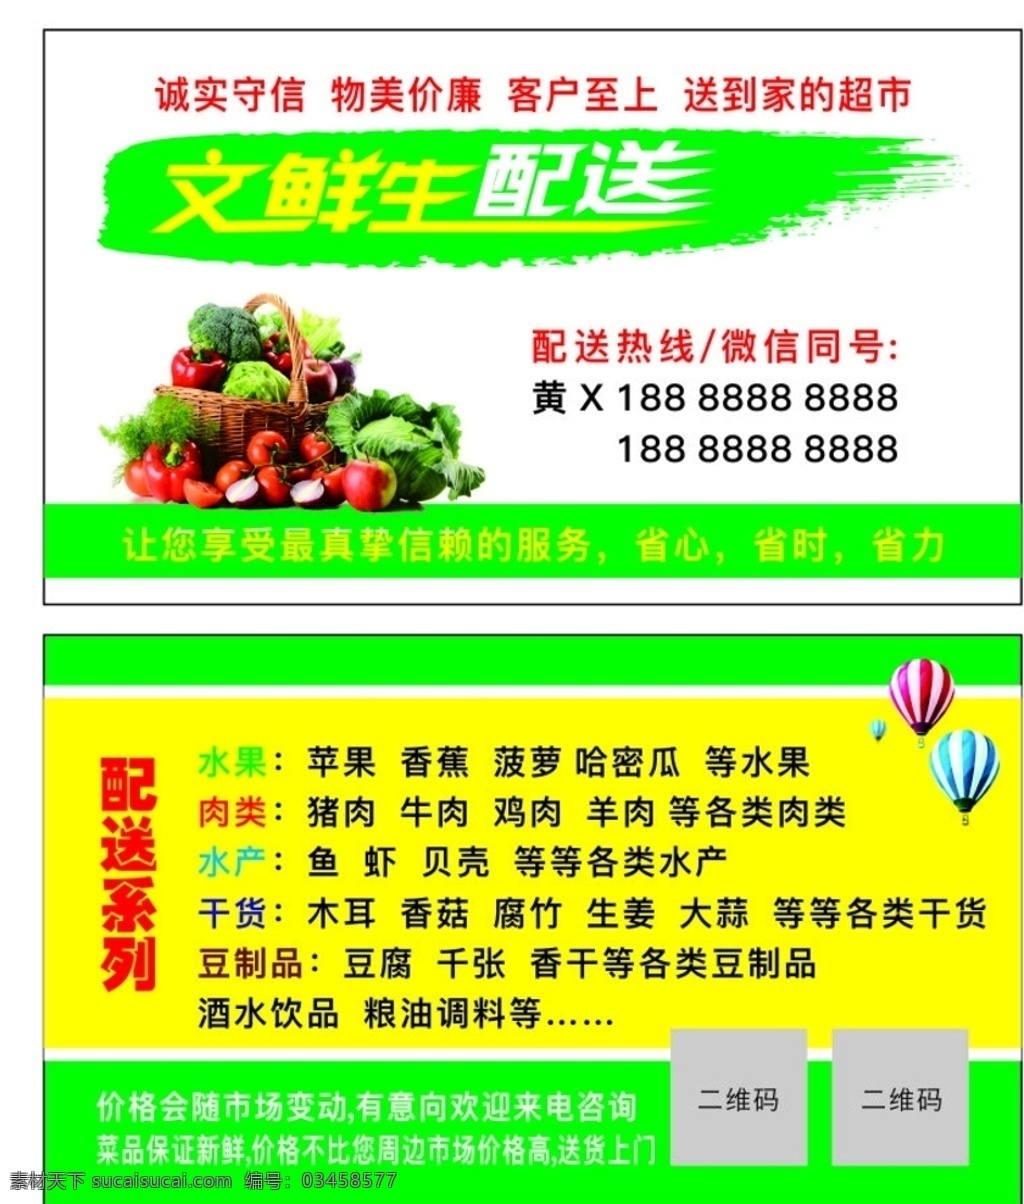 蔬果配送名片 蔬果名片 蔬果配送 蔬菜名片 蔬菜配送 标志图标 其他图标